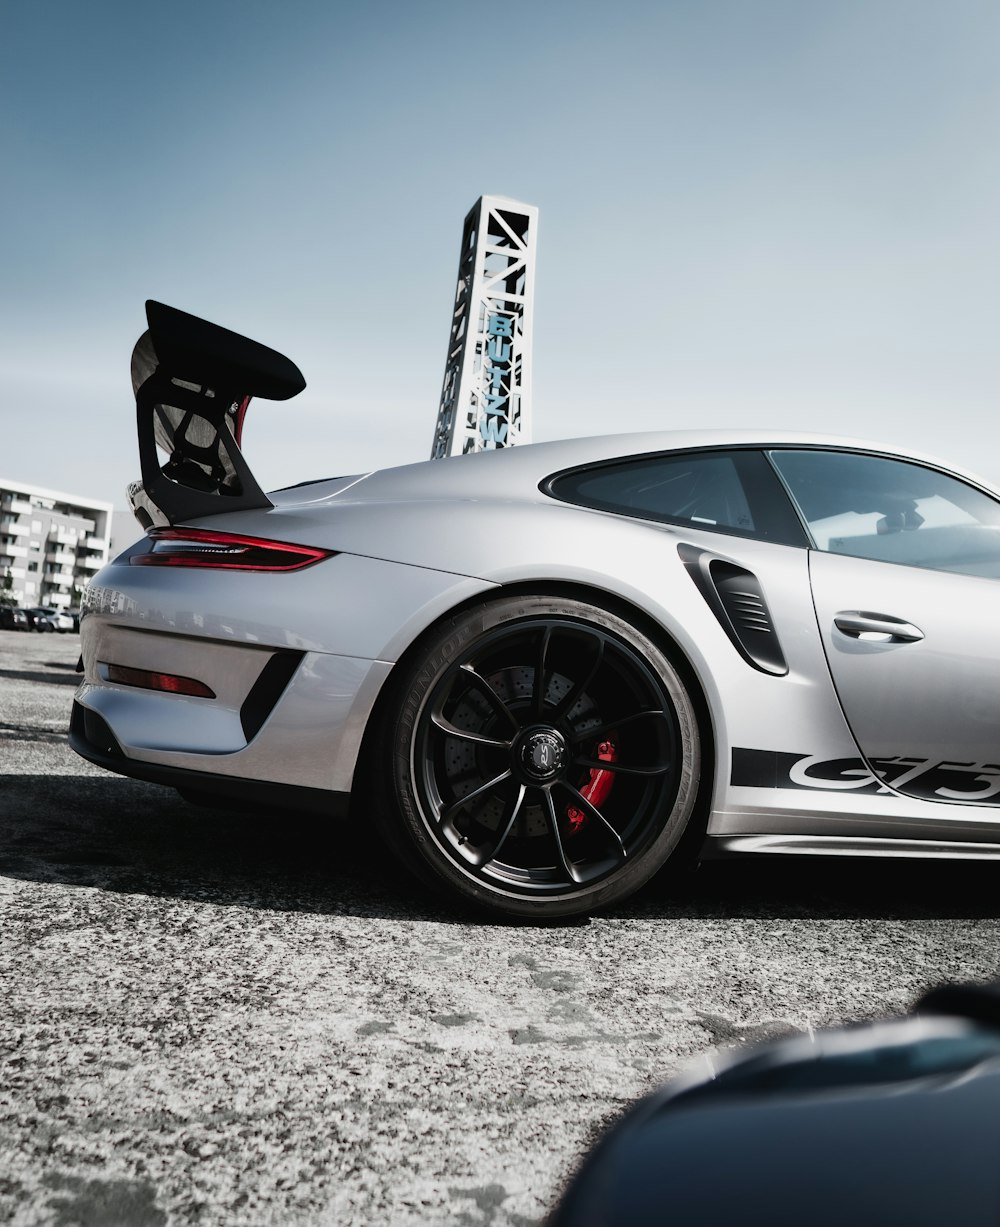 Porsche 911 blanco y negro estacionado sobre pavimento de concreto gris durante el día